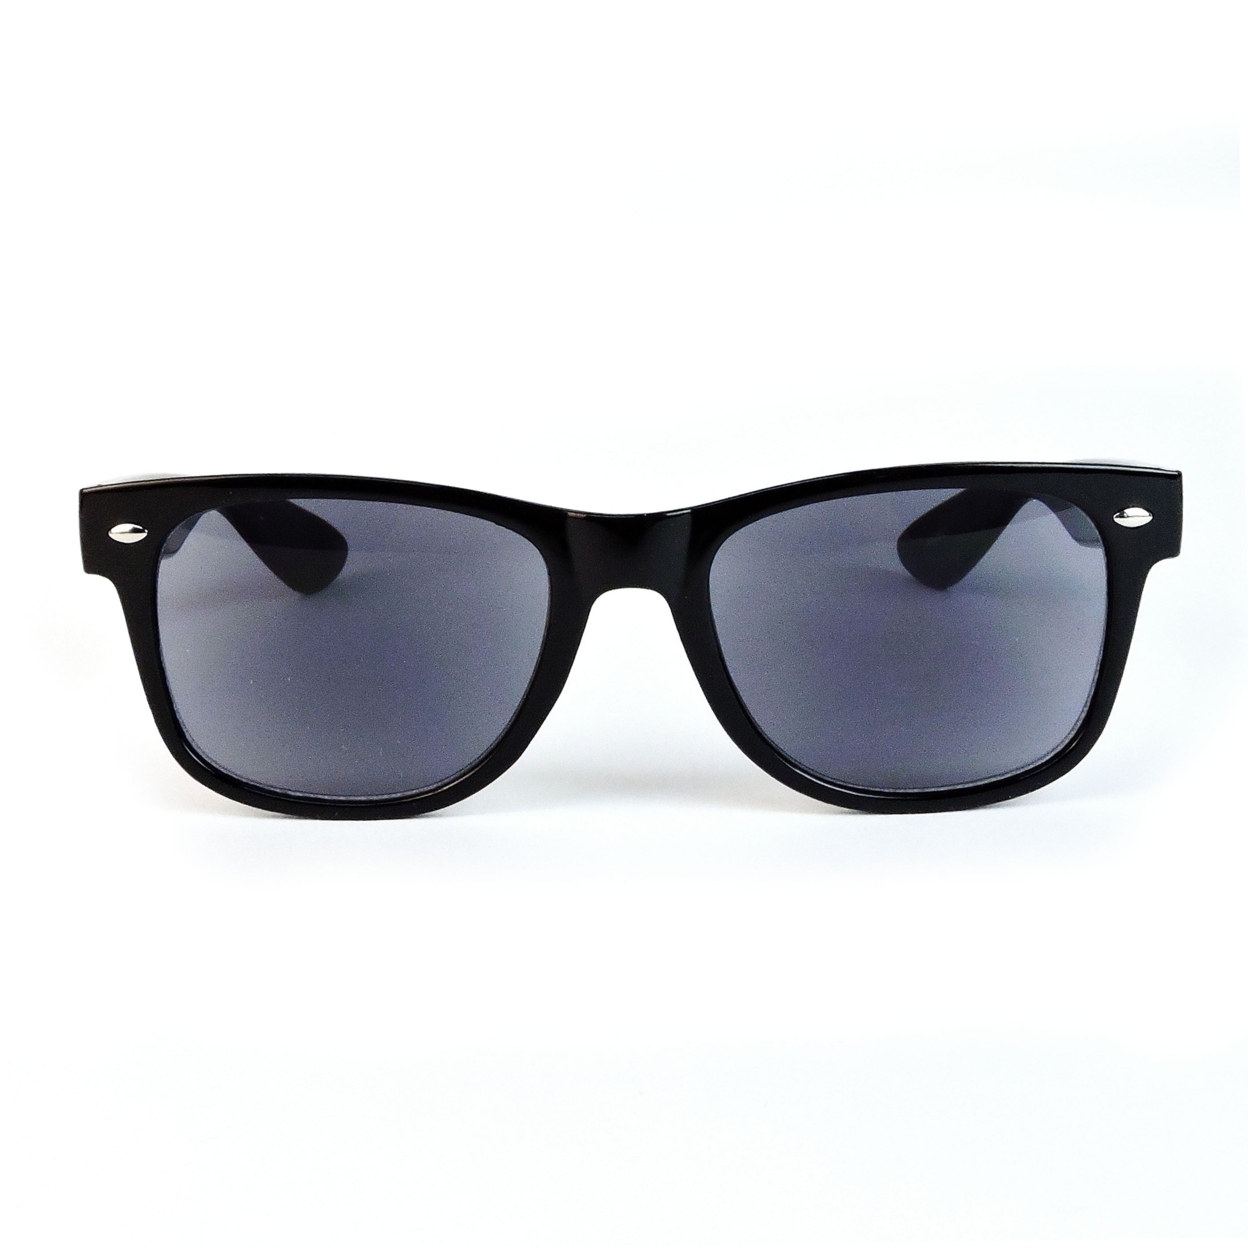 Sun Readers Full Lens Classic Frame 80's Retro Style Reading Sunglasses - Black, +2.00